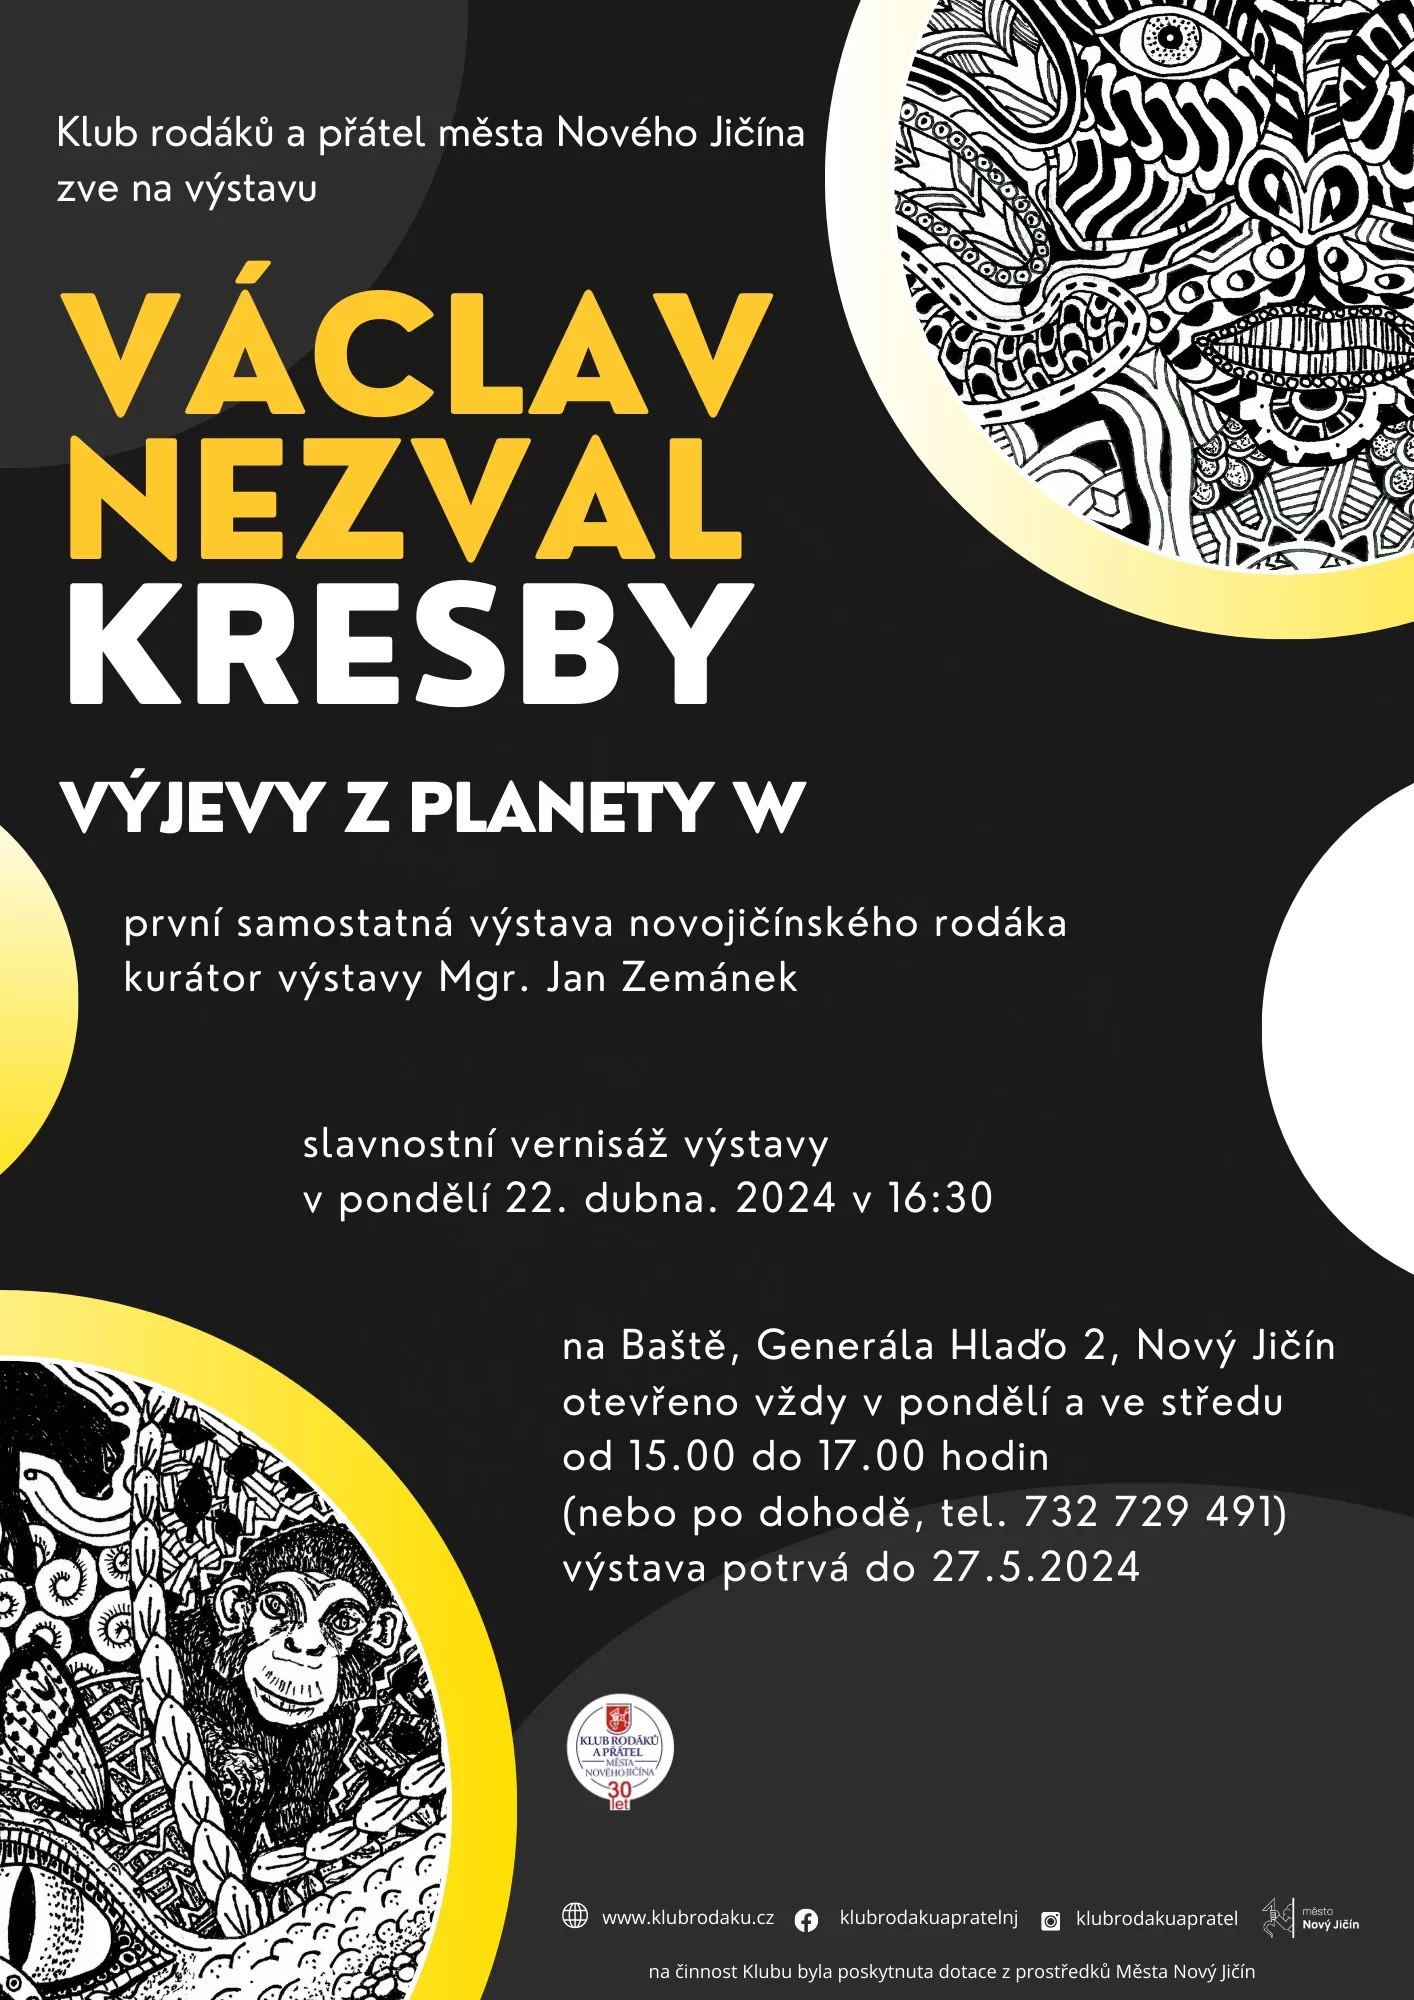 Václav Nezval – Kresby, výjevy z planety W